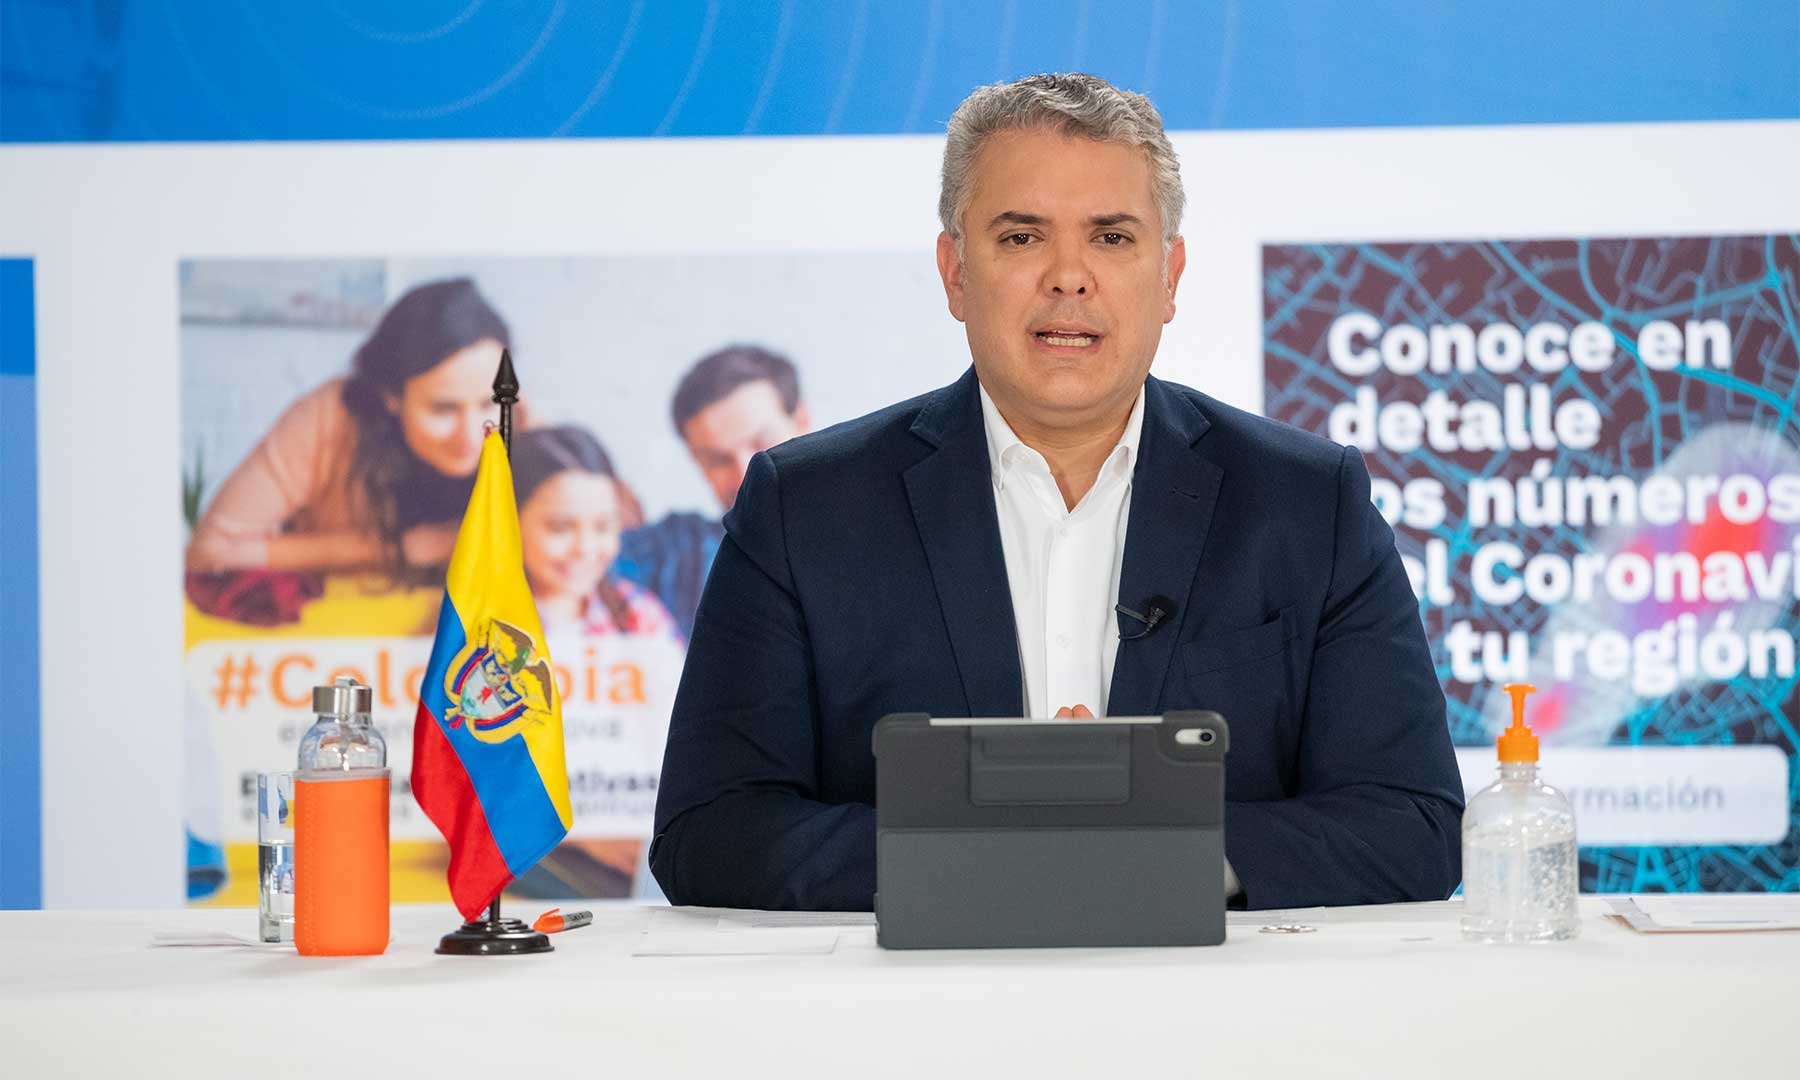 04/07/2020 El presidente de Colombia, Iván Duque.
ECONOMIA ESPAÑA EUROPA MADRID INTERNACIONAL
CÉSAR CARRIÓN / PRESIDENCIA DE COLOMBIA
